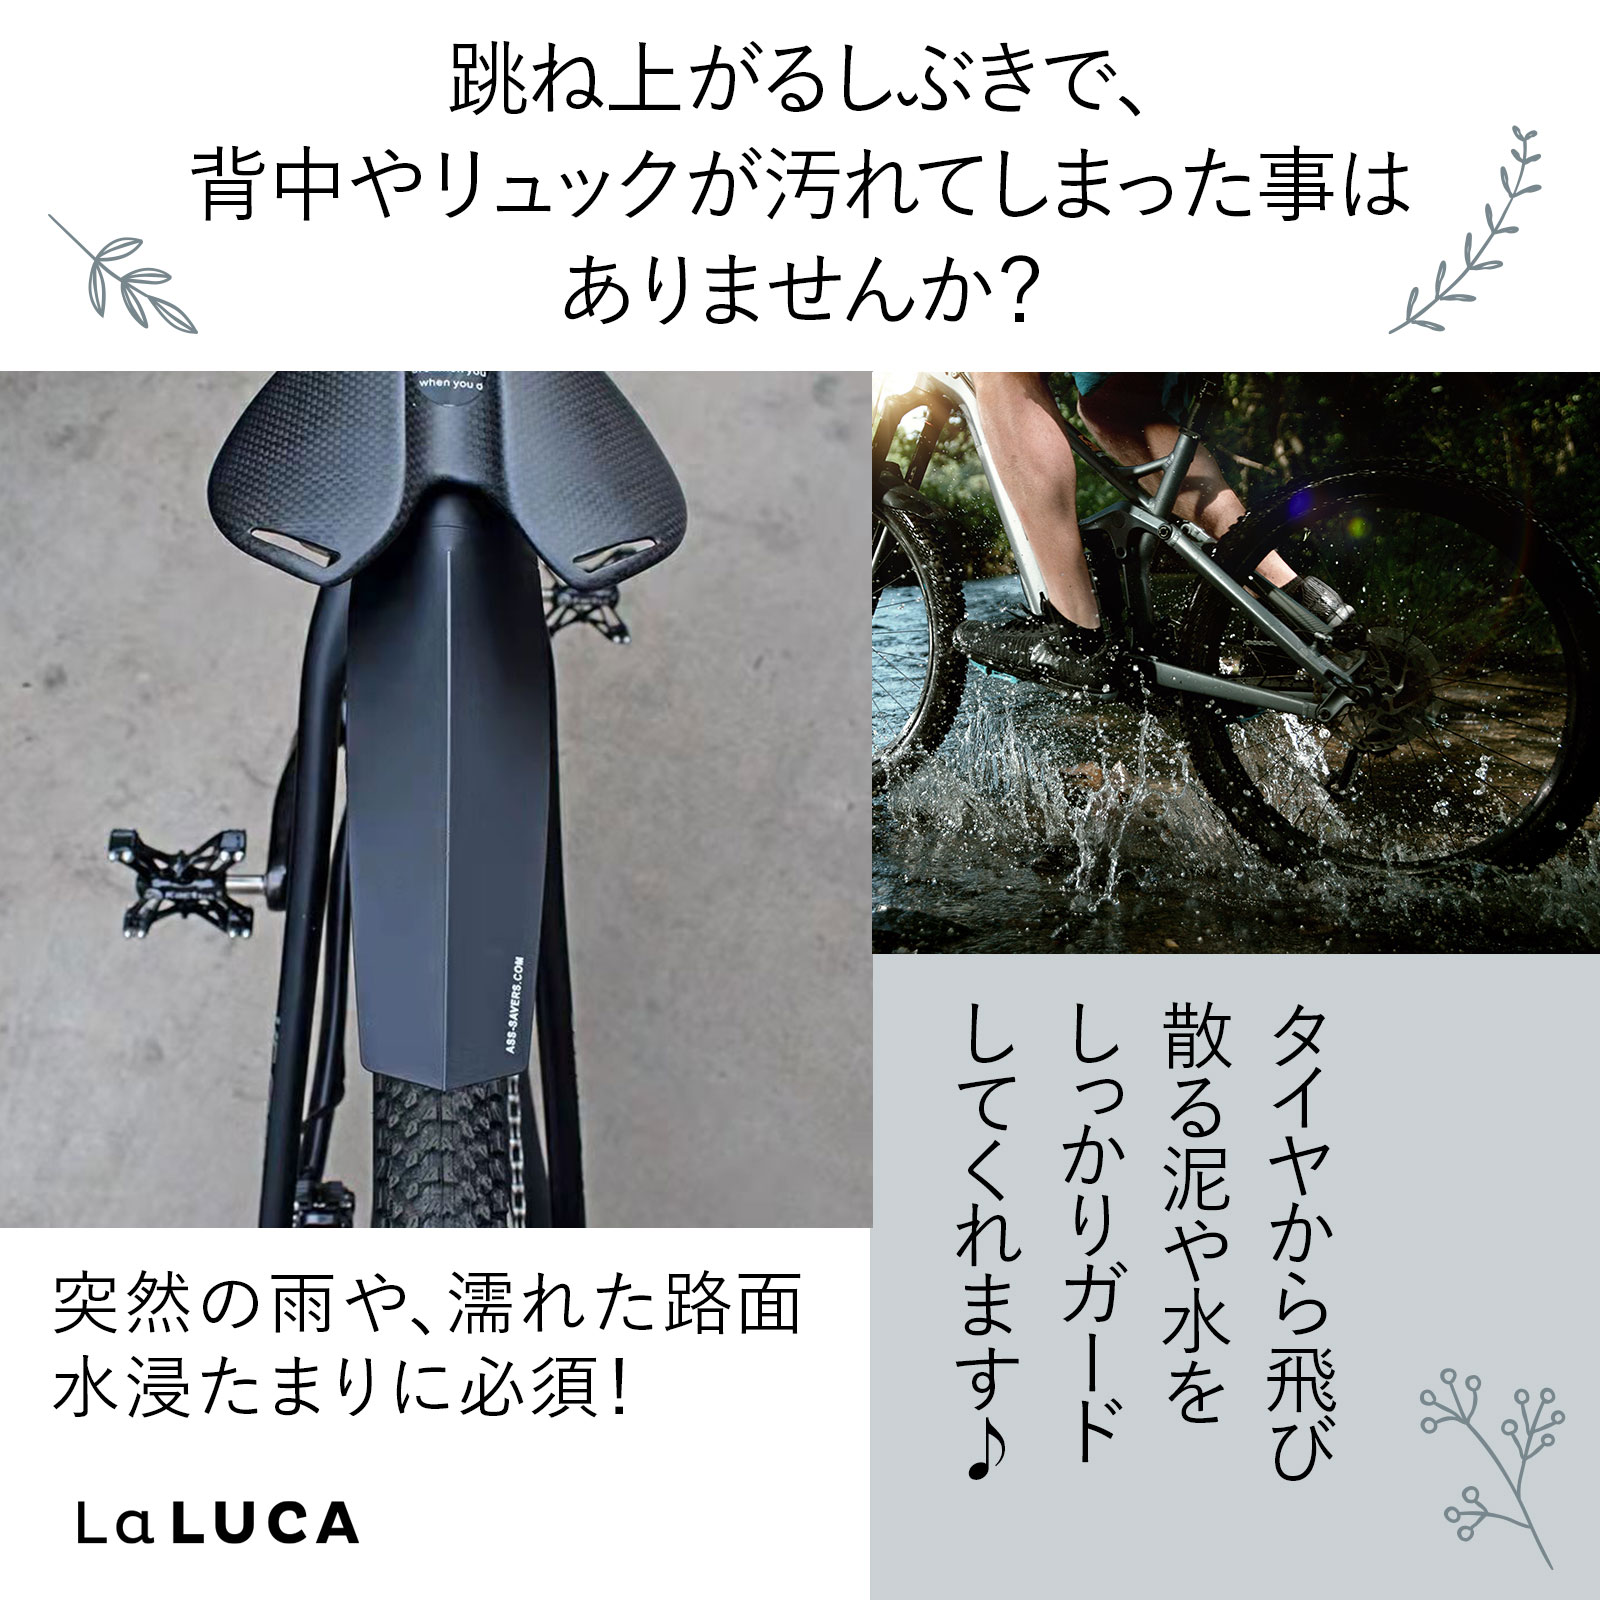 自転車 泥よけ 泥除け リアフェンダー マッドガード マウンテンバイク MTB ロードバイク クロスバイク ピストバイク 簡単装着 軽量 LaLUCA  :c070:LaLUCA 通販 